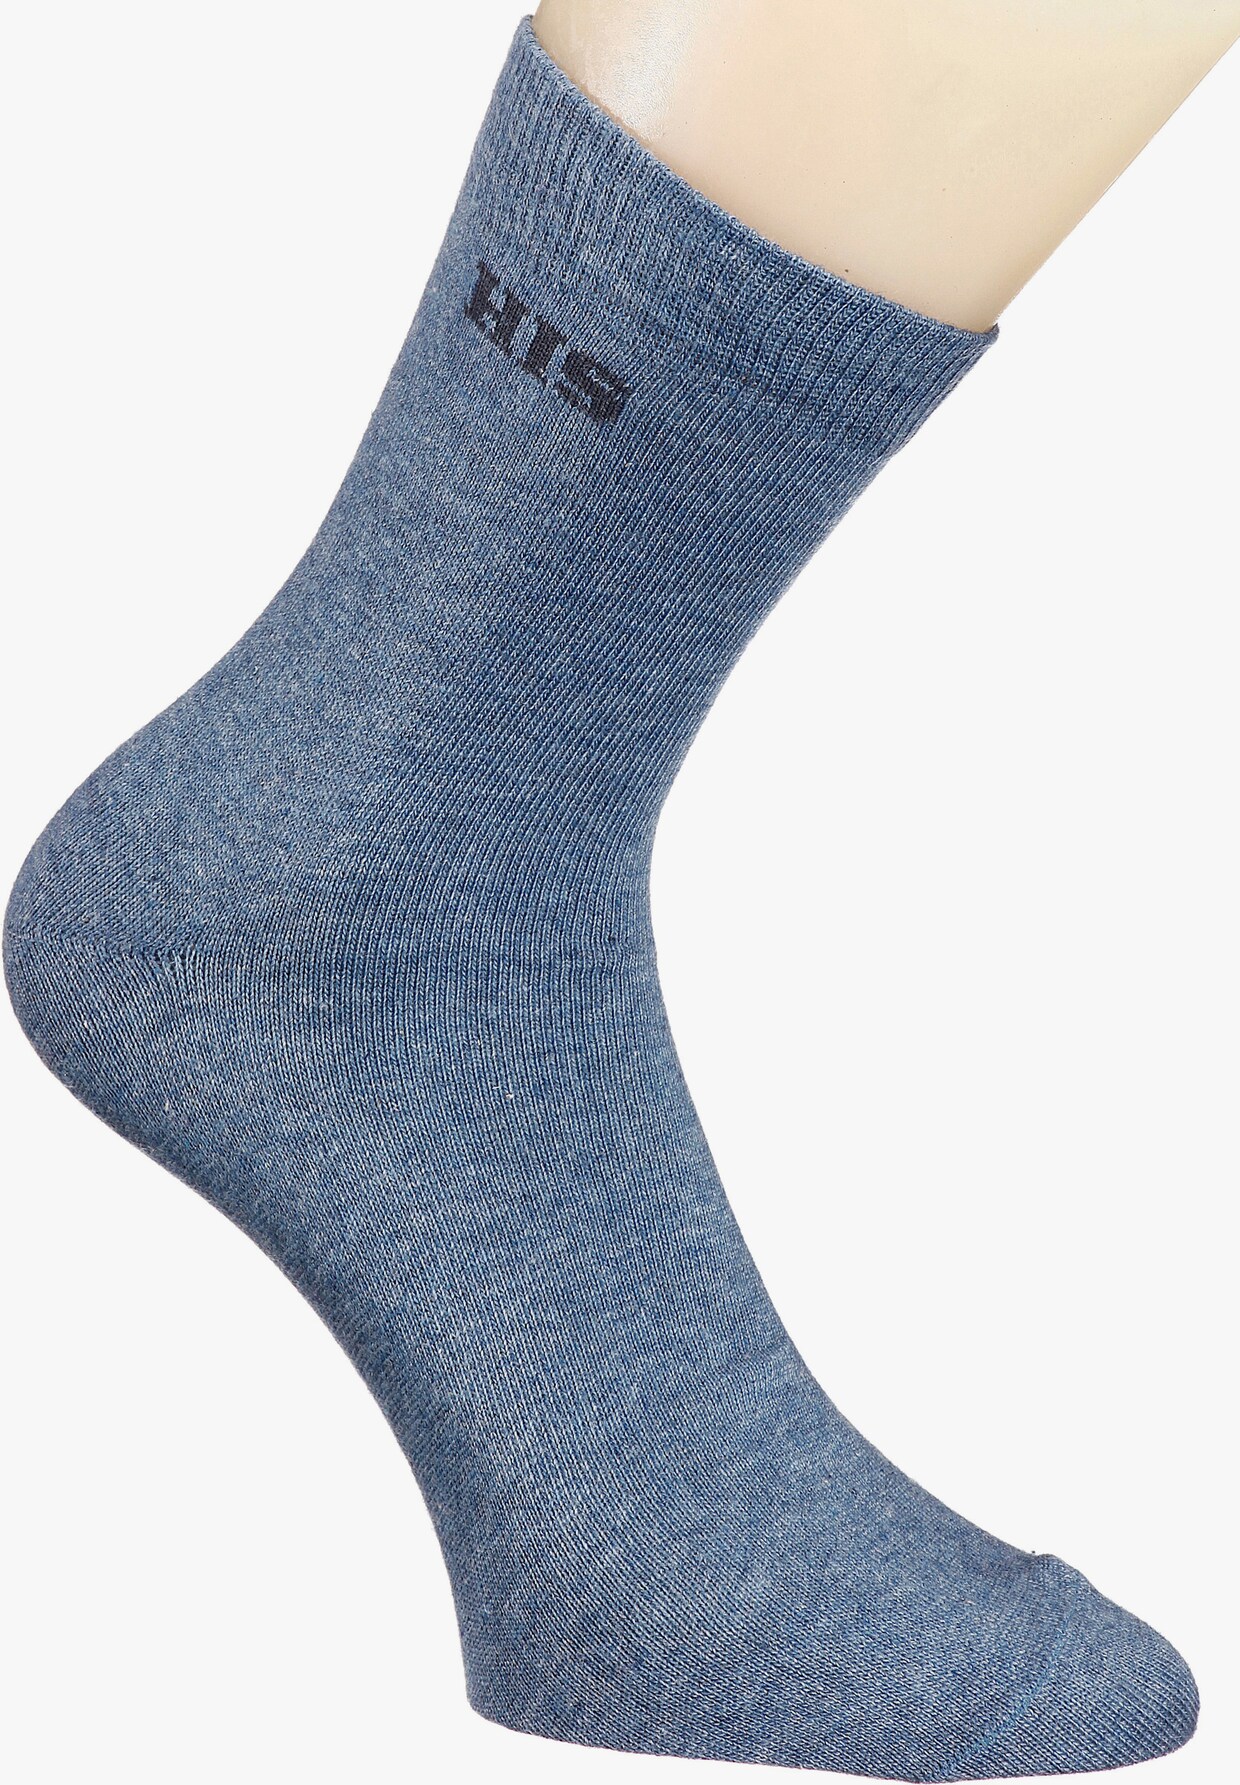 H.I.S Basicsocken - hellblau, blau, grau, schwarz